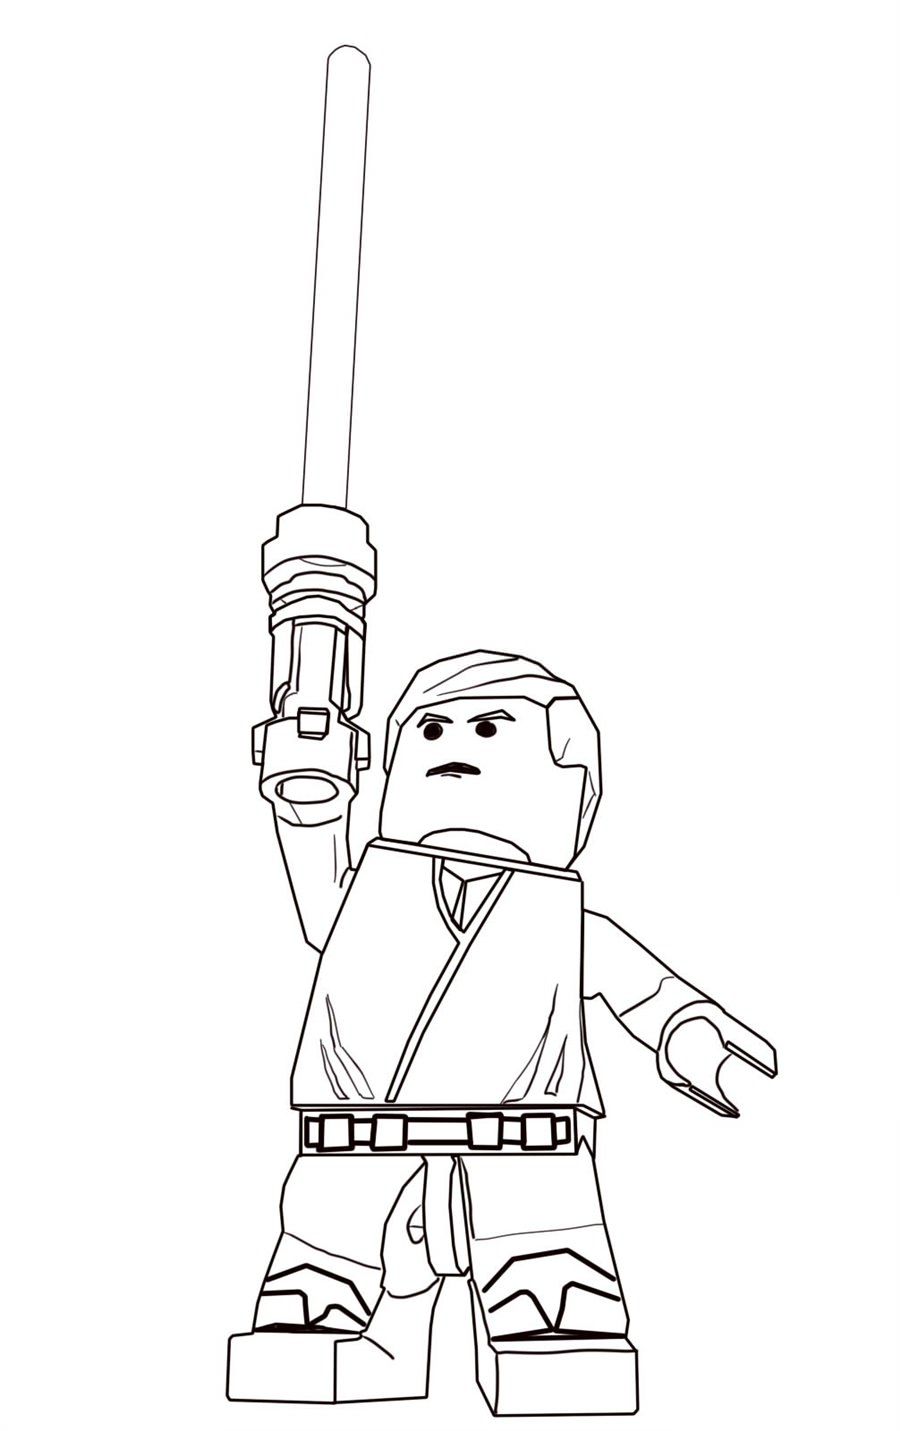 Розмальовка LEGO Star Wars Люка Скайвокера